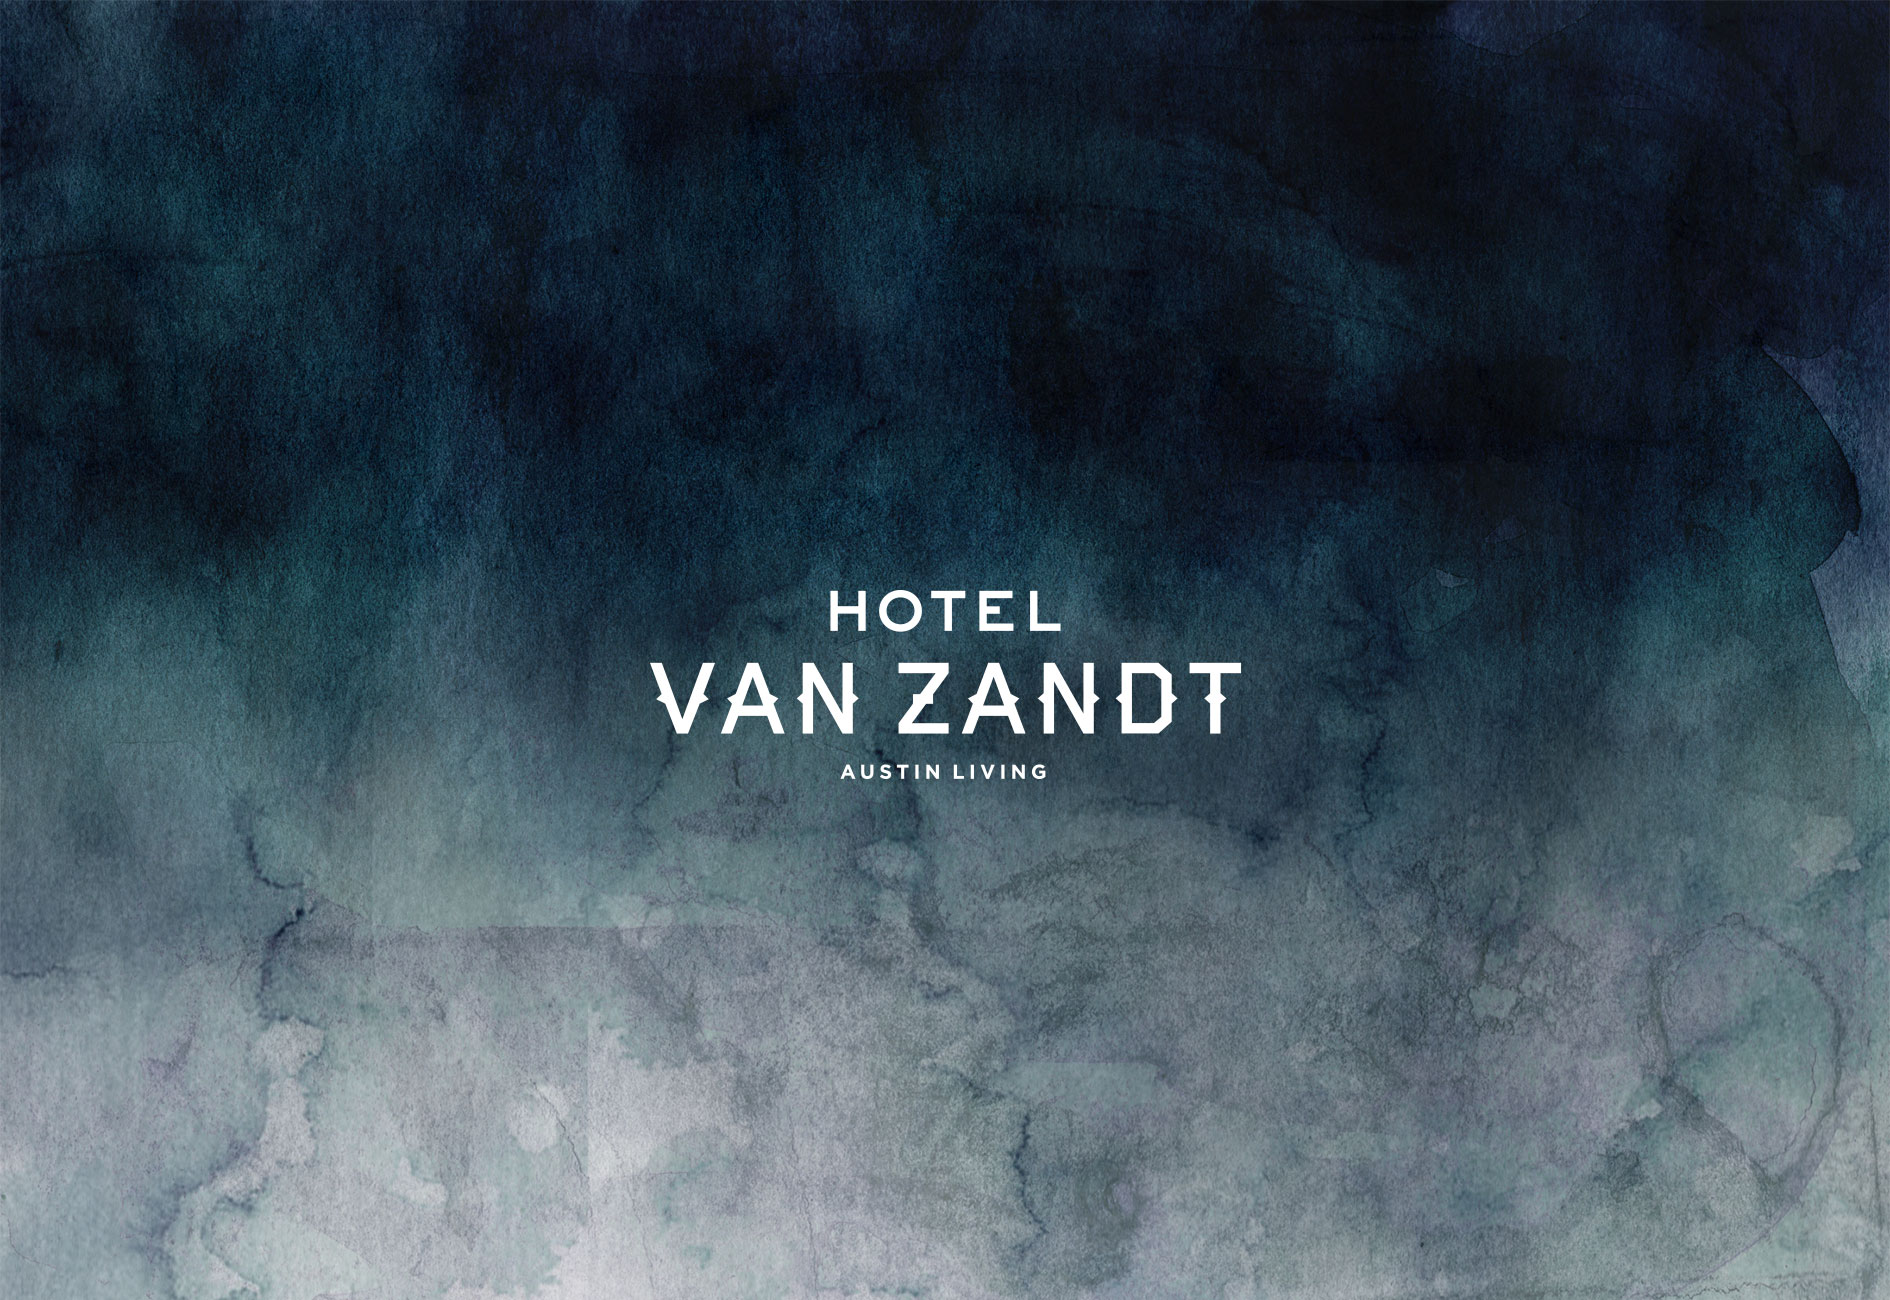 HOTEL VAN ZANDT BRANDING by Mark Zeff Design